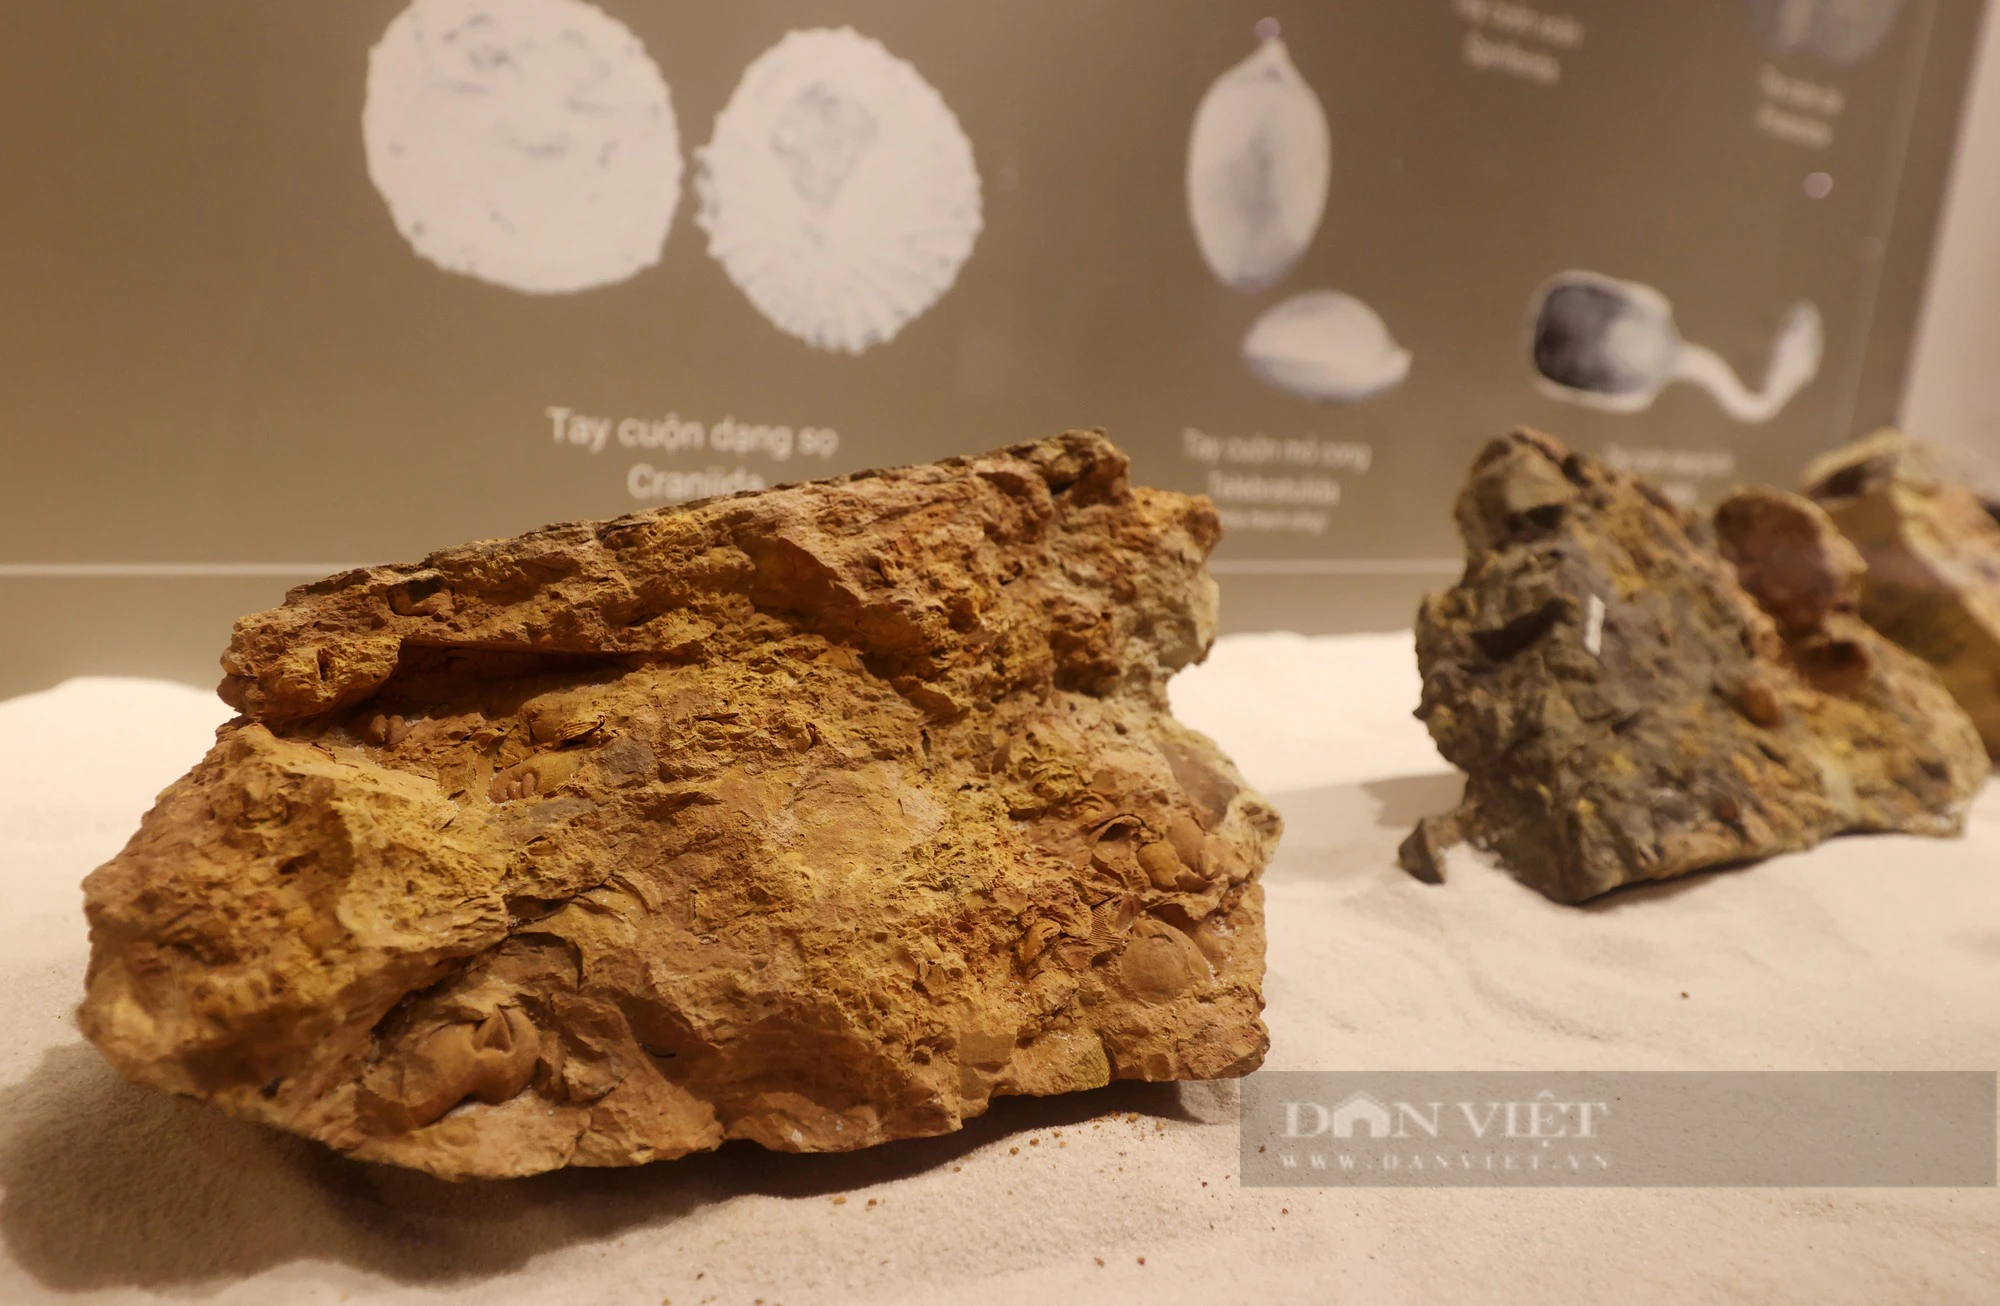 Hóa thạch trăm triệu năm được trưng bày tại Hà Nội: Chiêm ngưỡng viên đá cổ nhất Việt Nam - Ảnh 8.